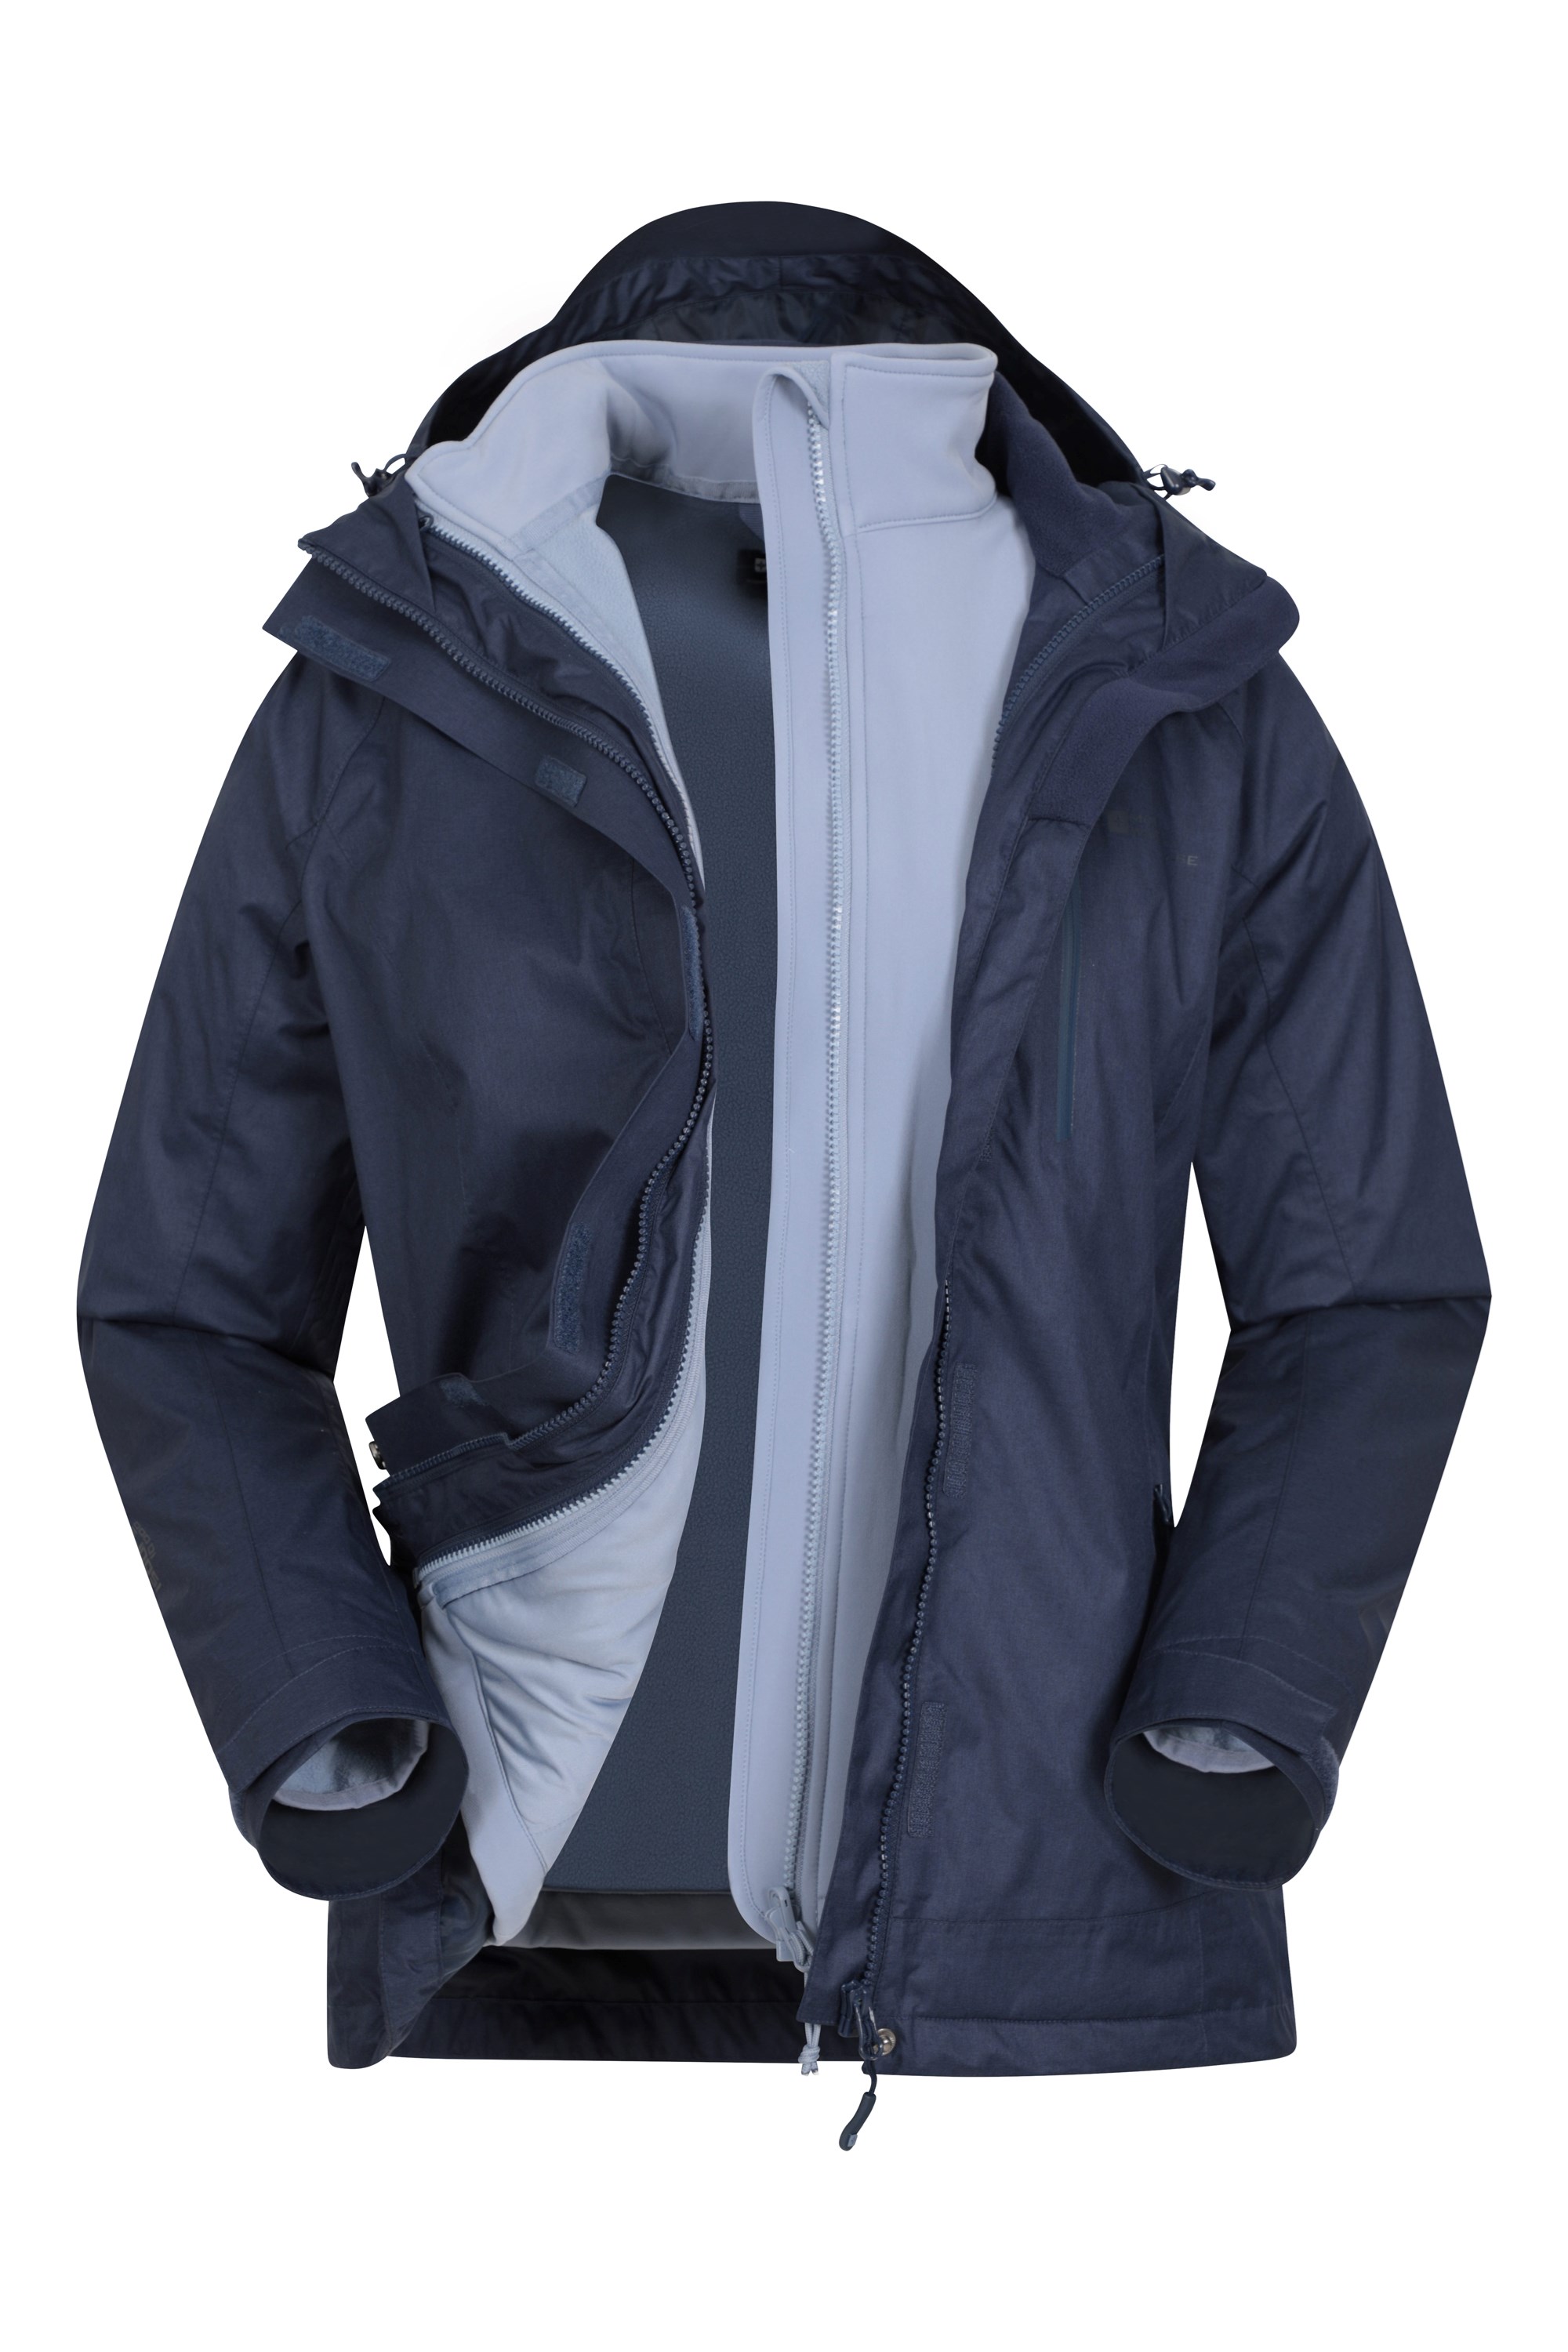 Felokont Womens 3 in 1 Waterproof Windproof Mountain Ski Jacket Winter Jacket Outdoor Snow Coat Set with Detachable Fleece Liner 